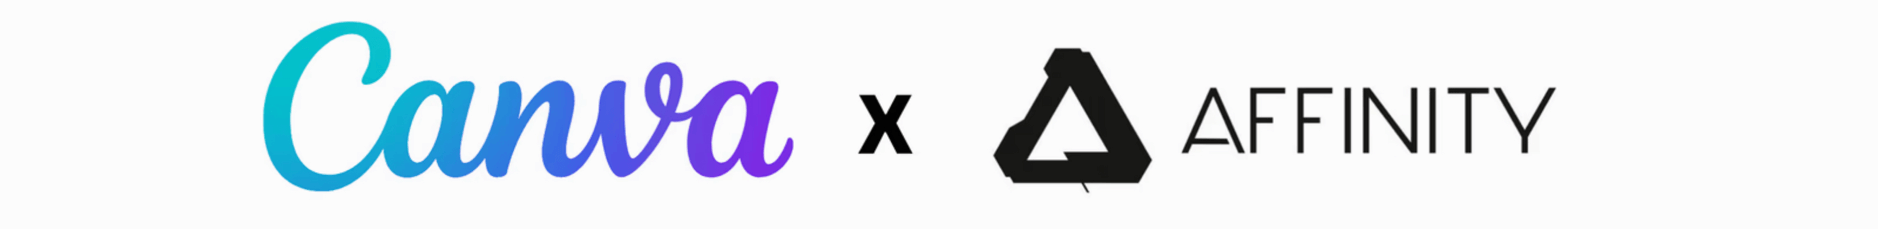 Das Bild zeigt die Logos von zwei Design-Softwareunternehmen: Canva und Affinity. Sie sind durch ein 'X' verbunden, was eine Partnerschaft oder Zusammenarbeit zwischen den beiden Unternehmen andeutet.